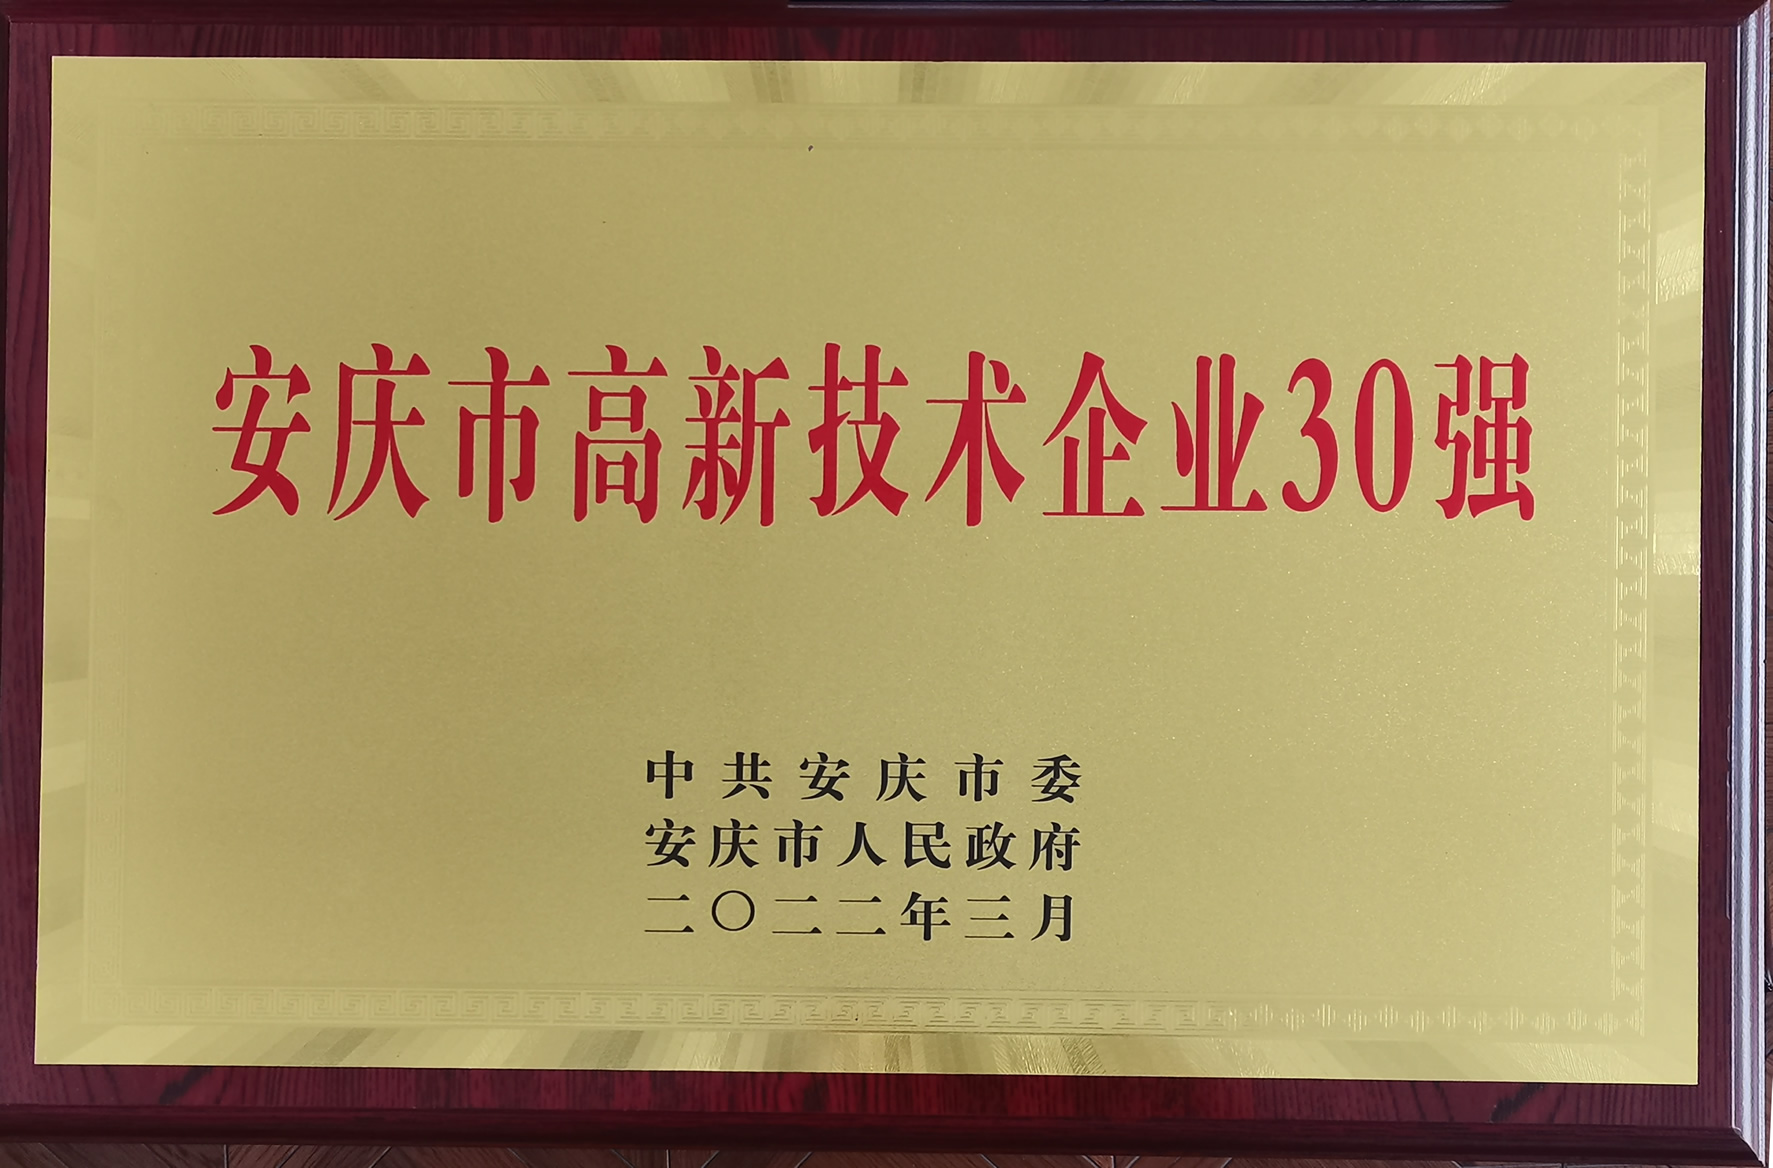 我司获得安庆市高新技术企业三十强称号